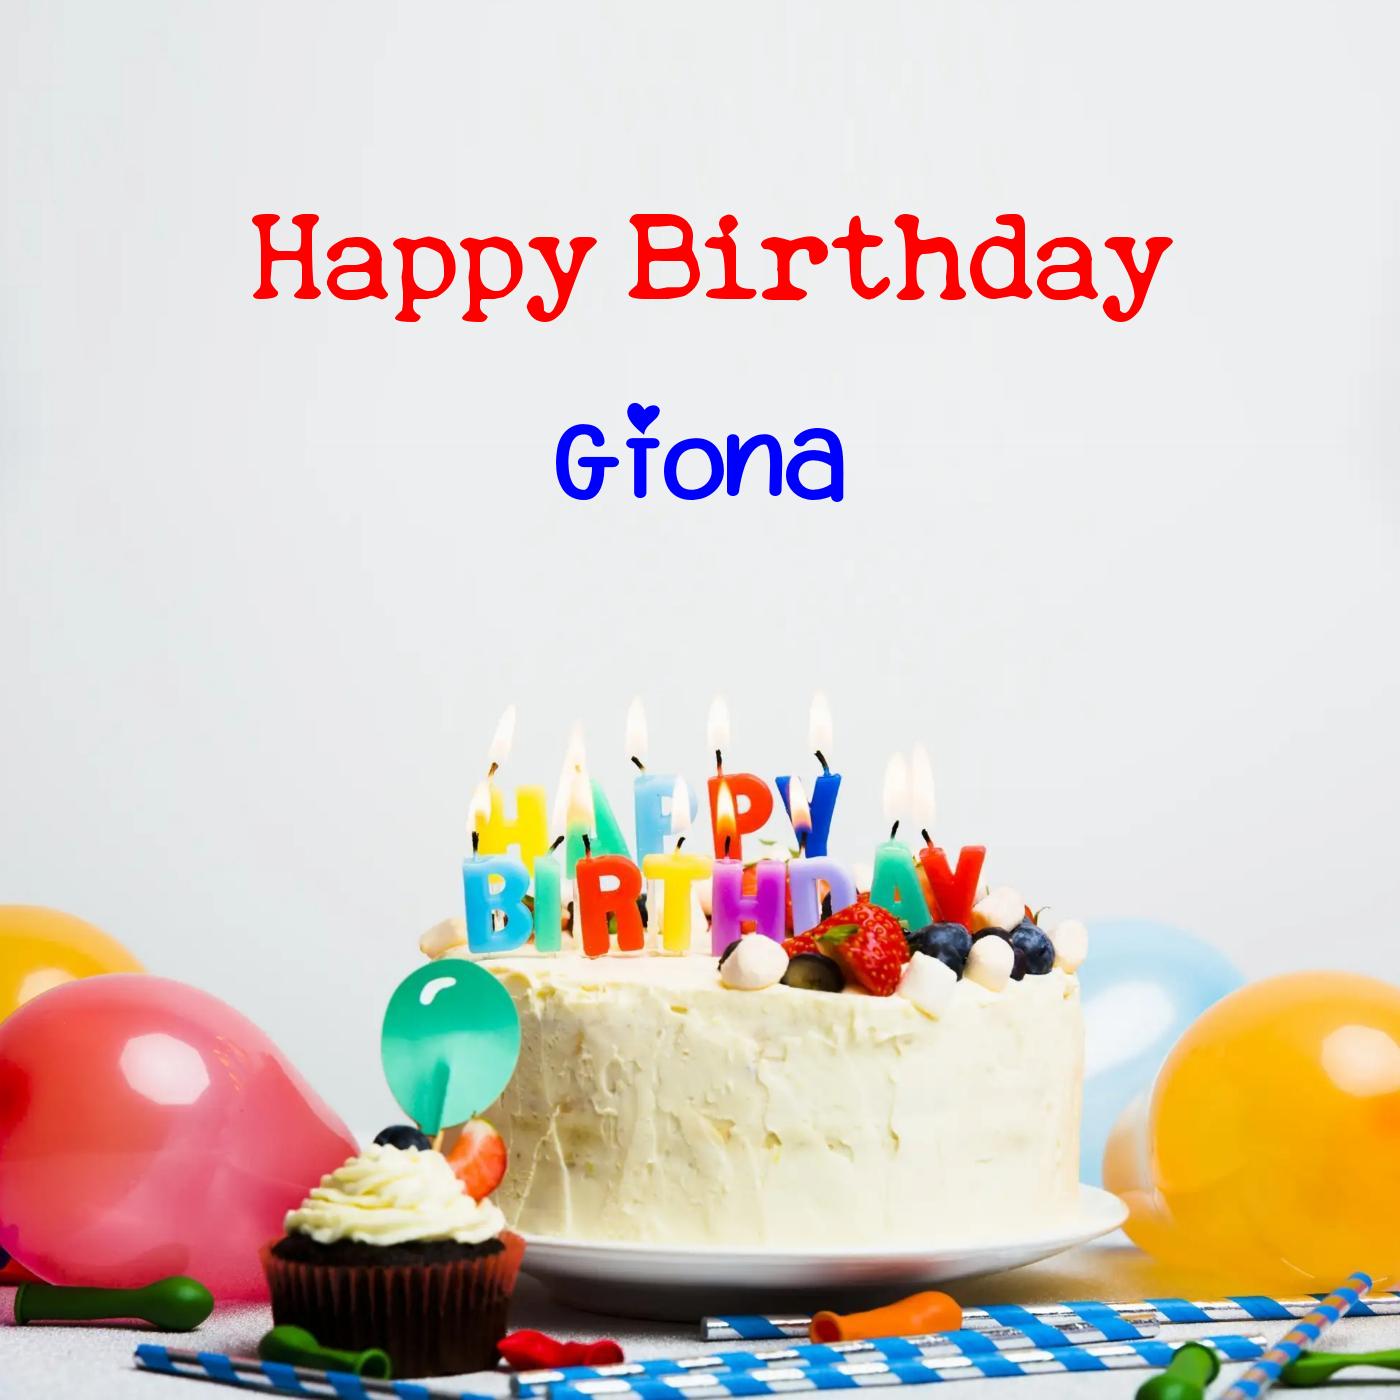 Happy Birthday Giona Cake Balloons Card